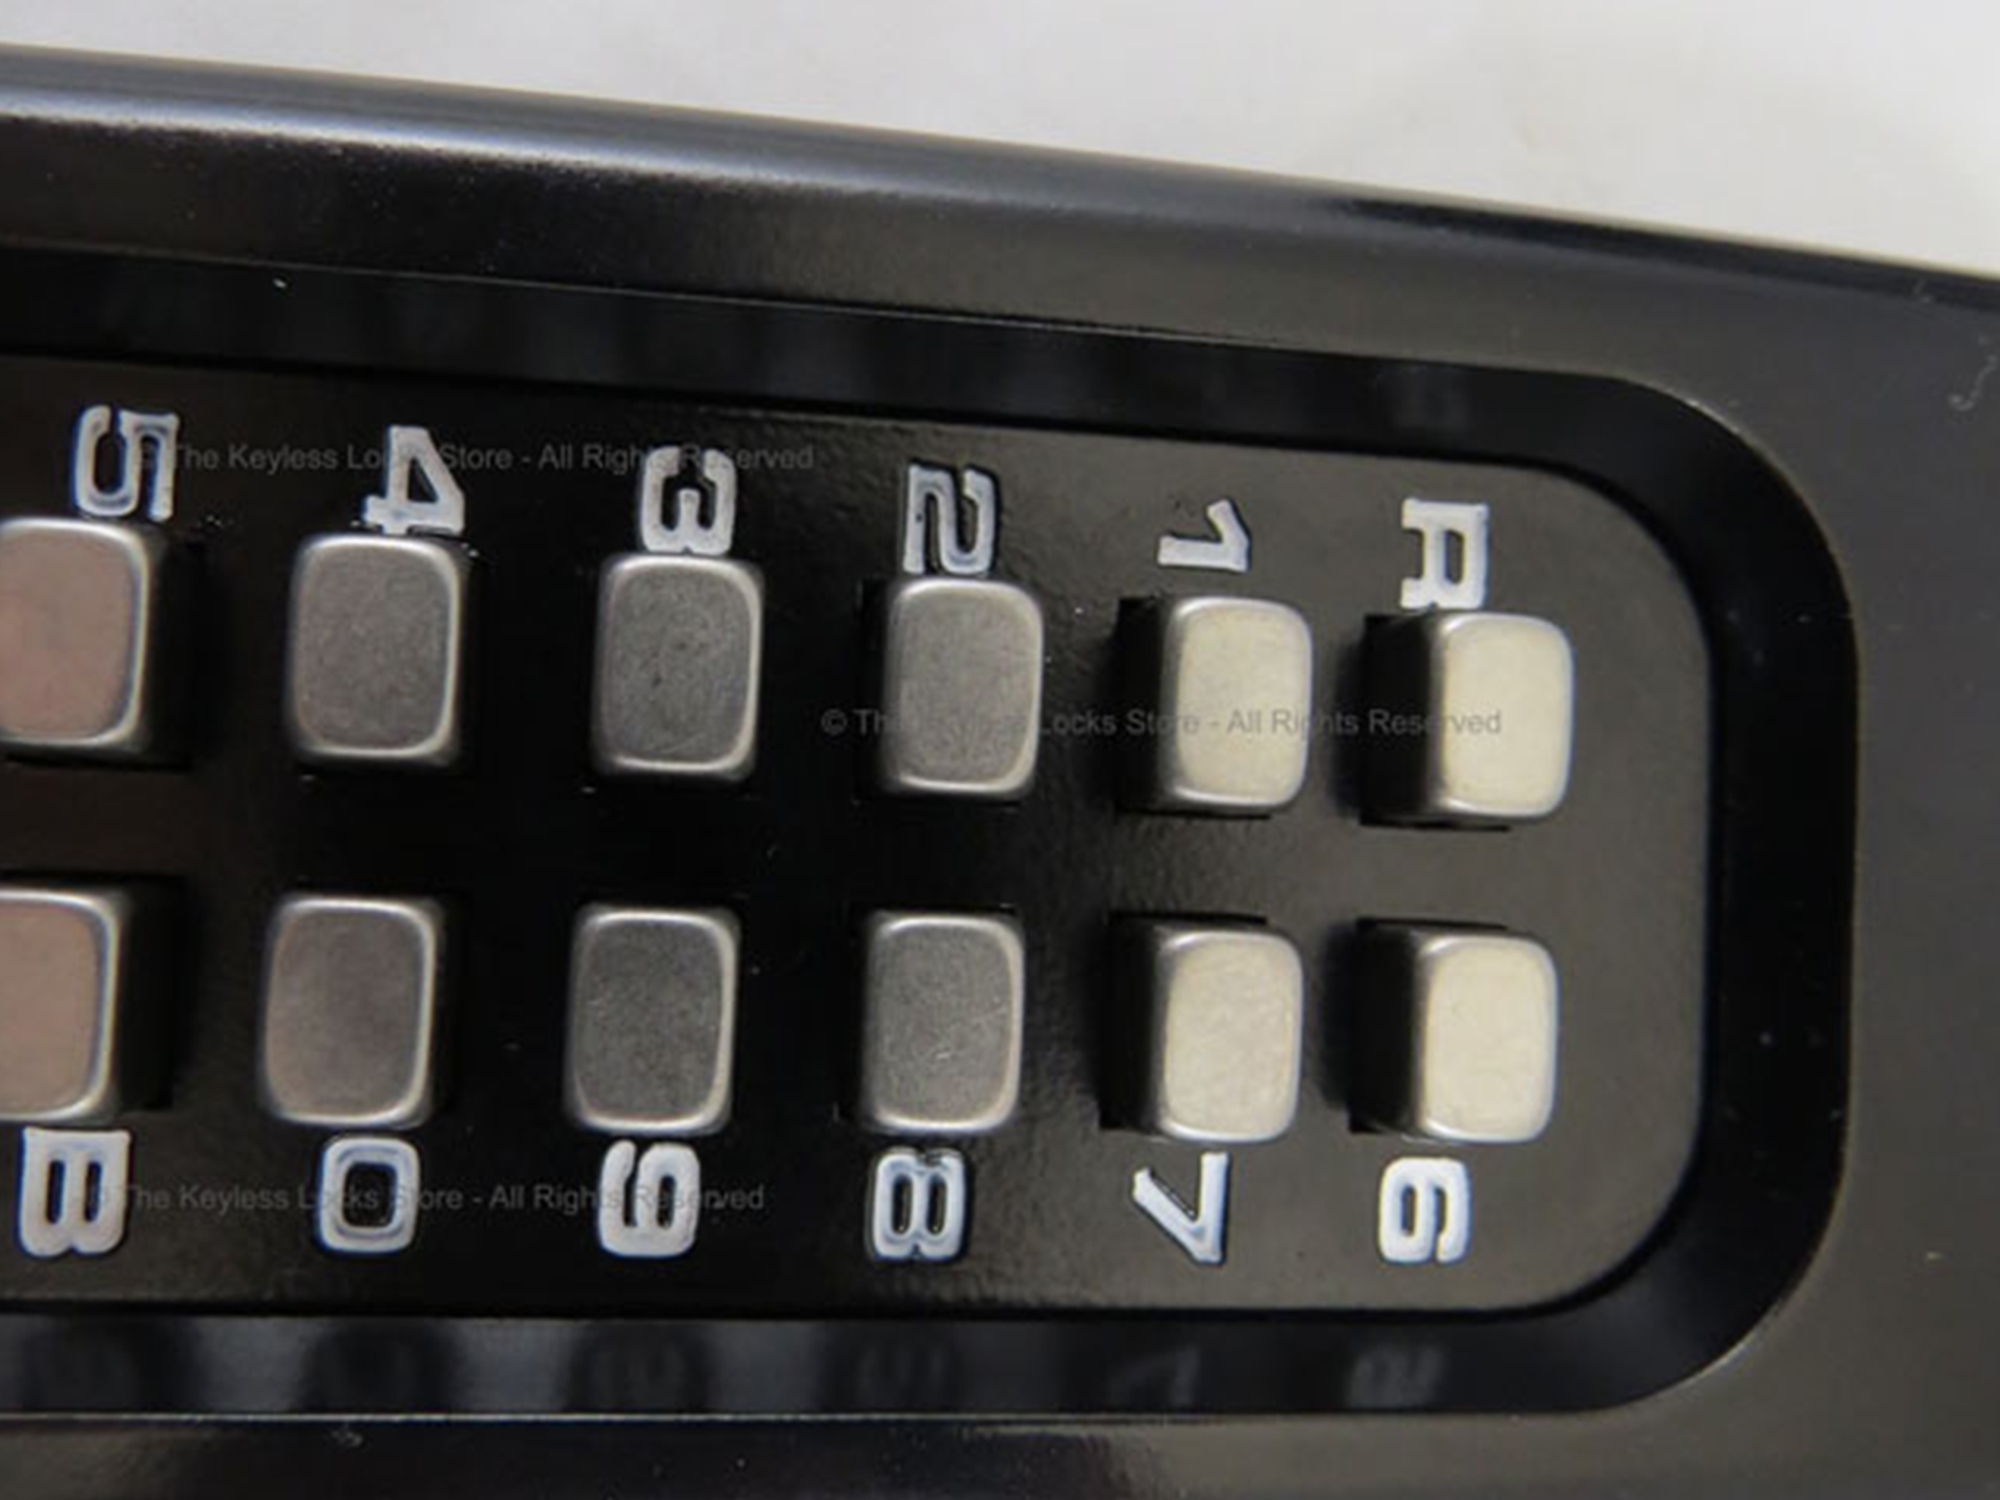 Lockey 160P Heavy-Duty Passage Knob-Handle Panic-Bar Keypad Lock - Click Image to Close